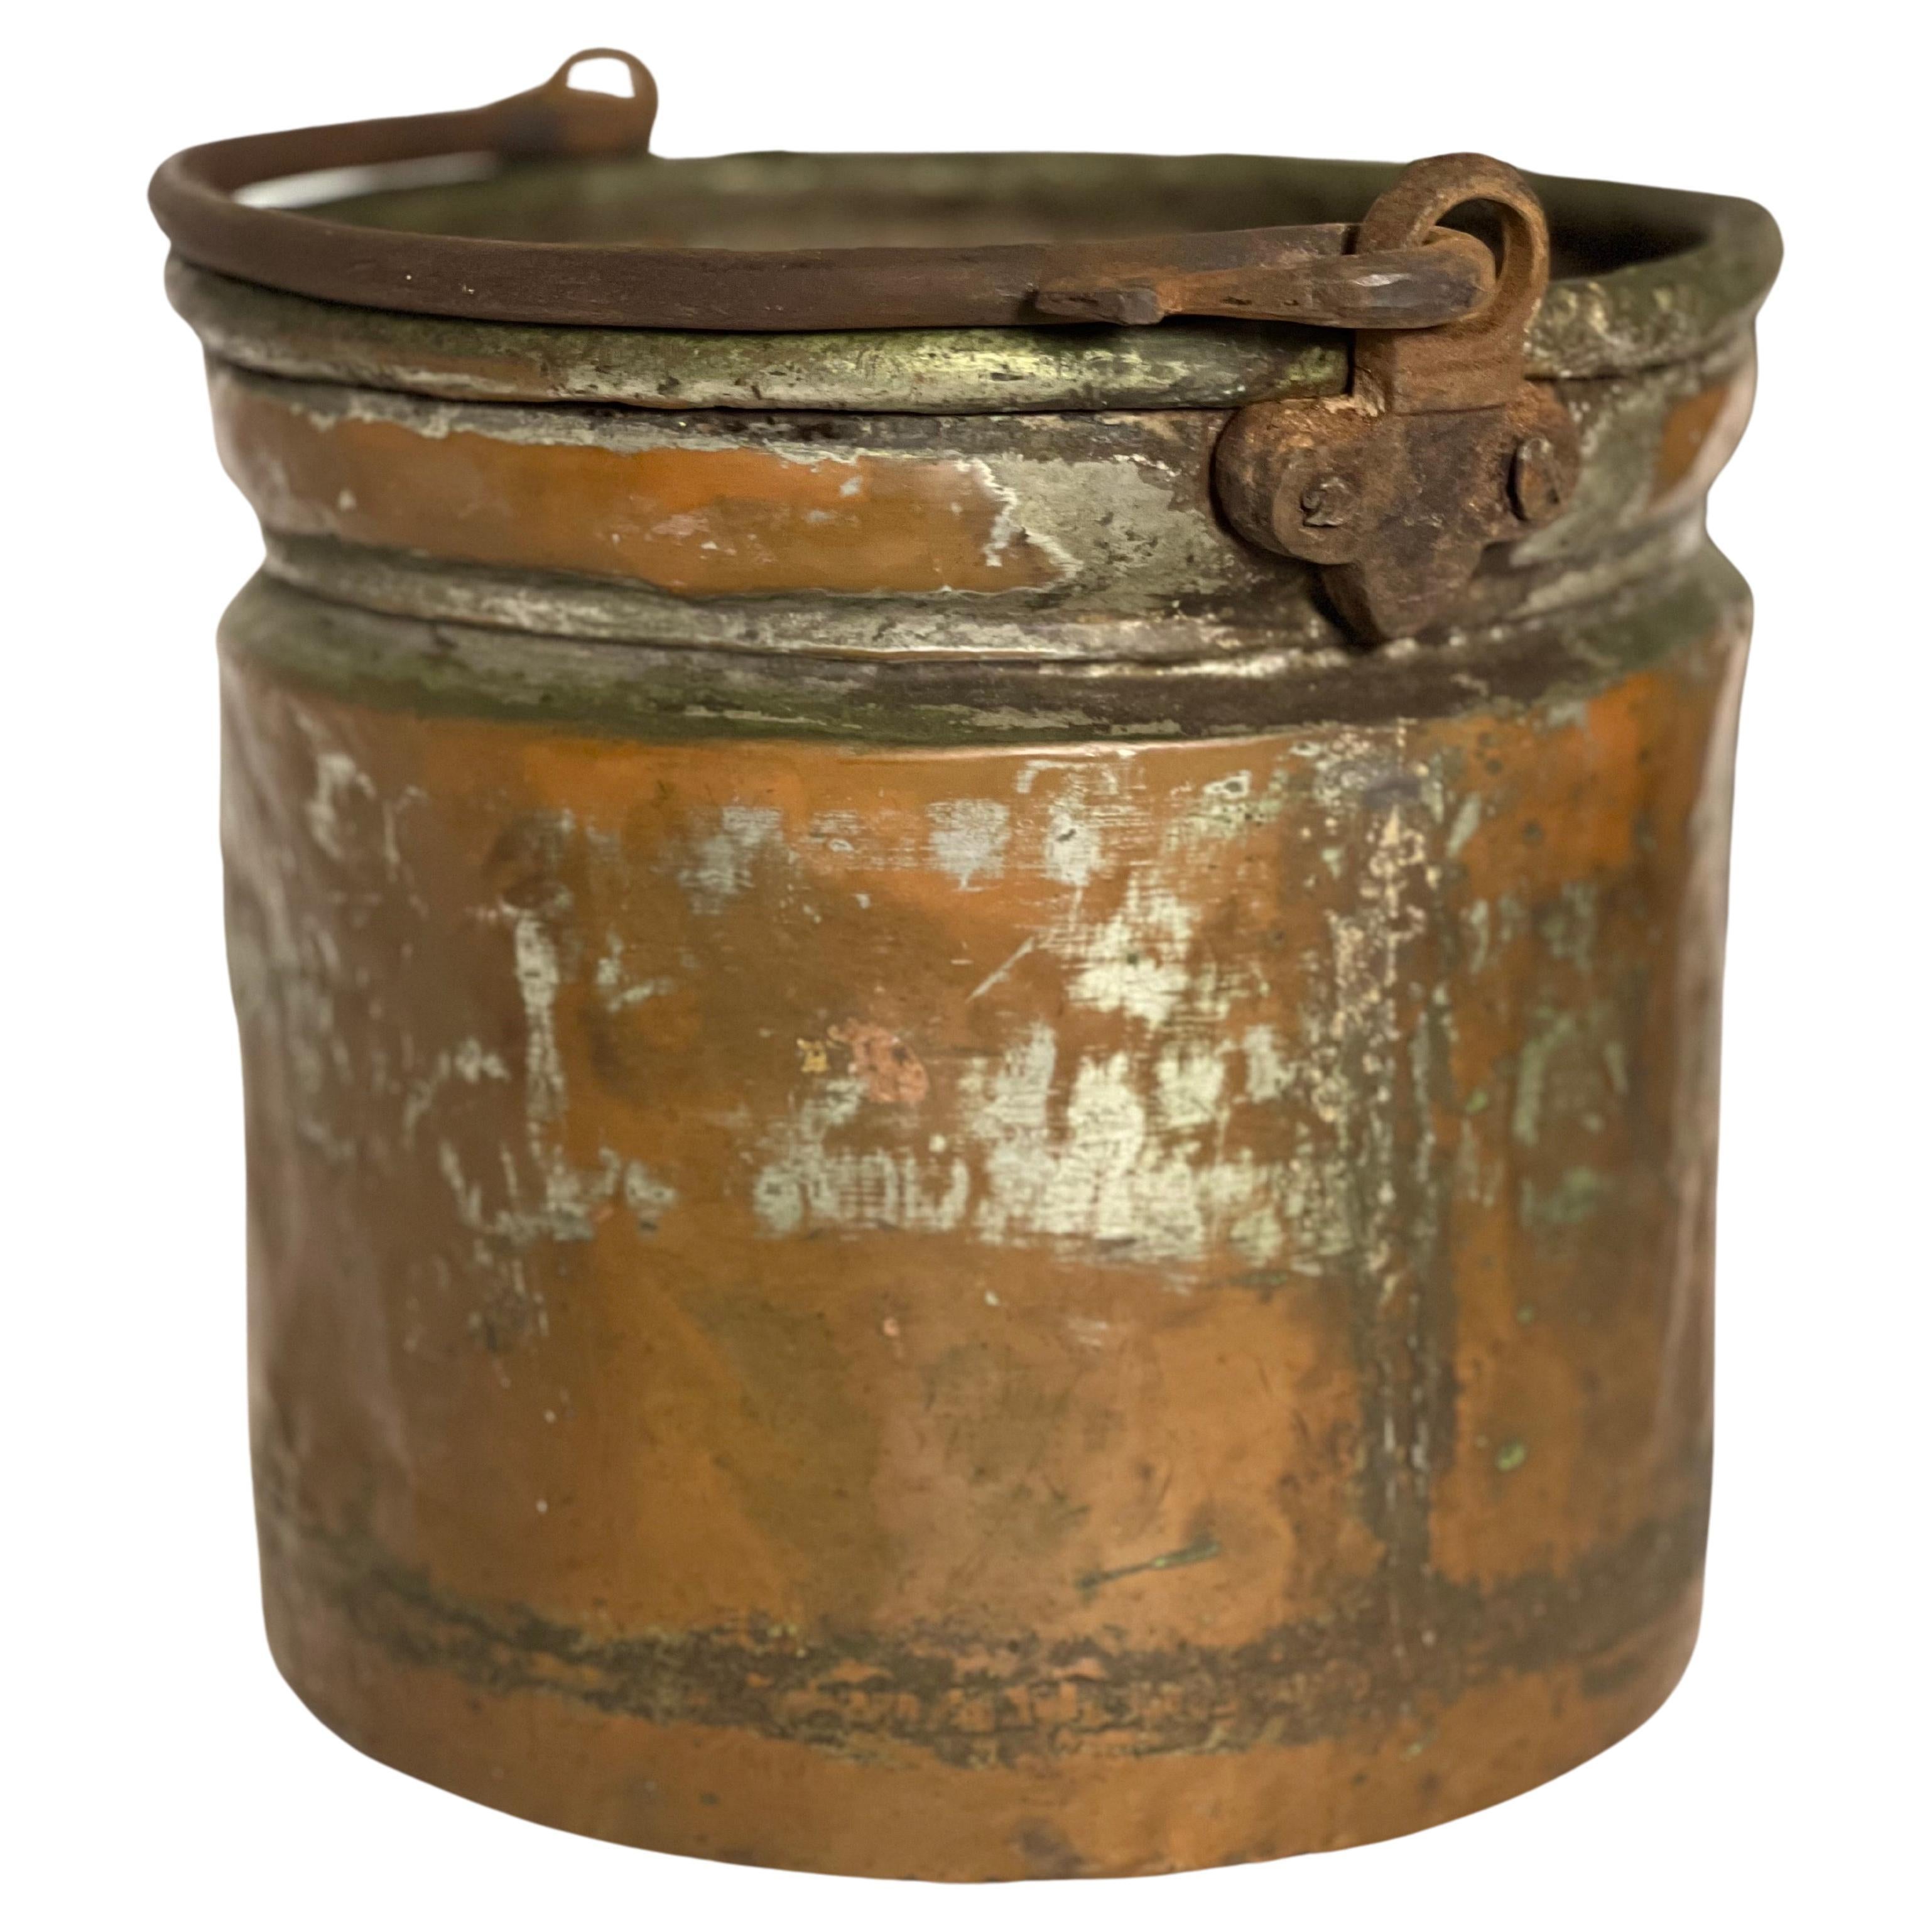 Seau ou jardinière français du 19ème siècle en cuivre à queue d'aronde avec poignée